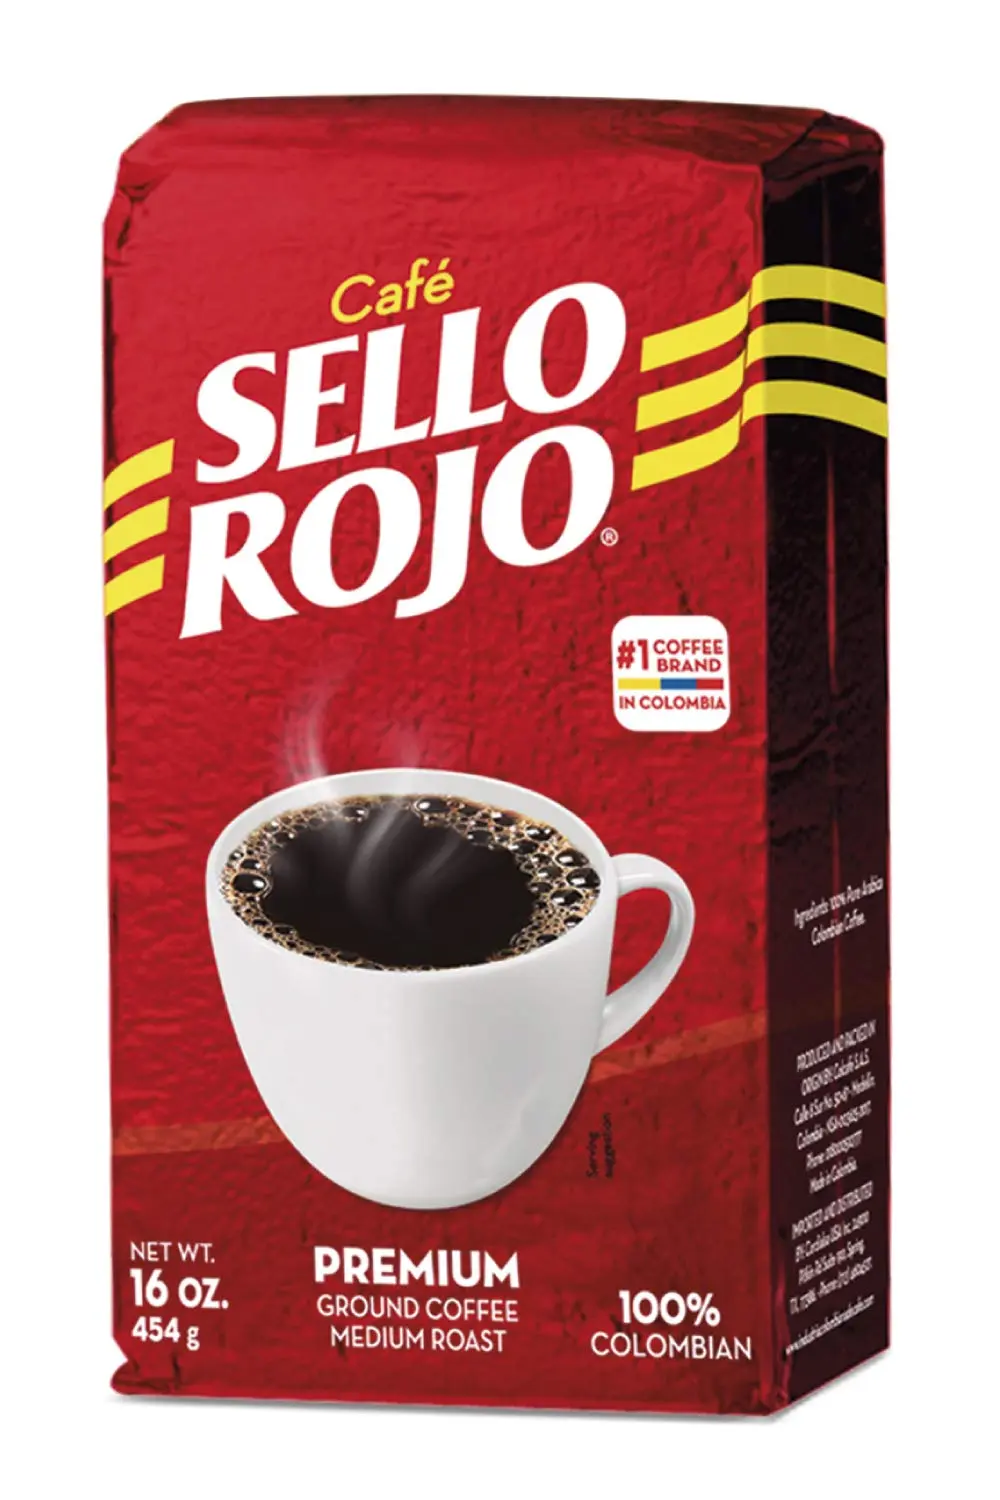 cafe sello rojo amazon - Dónde venden Café Sello Rojo